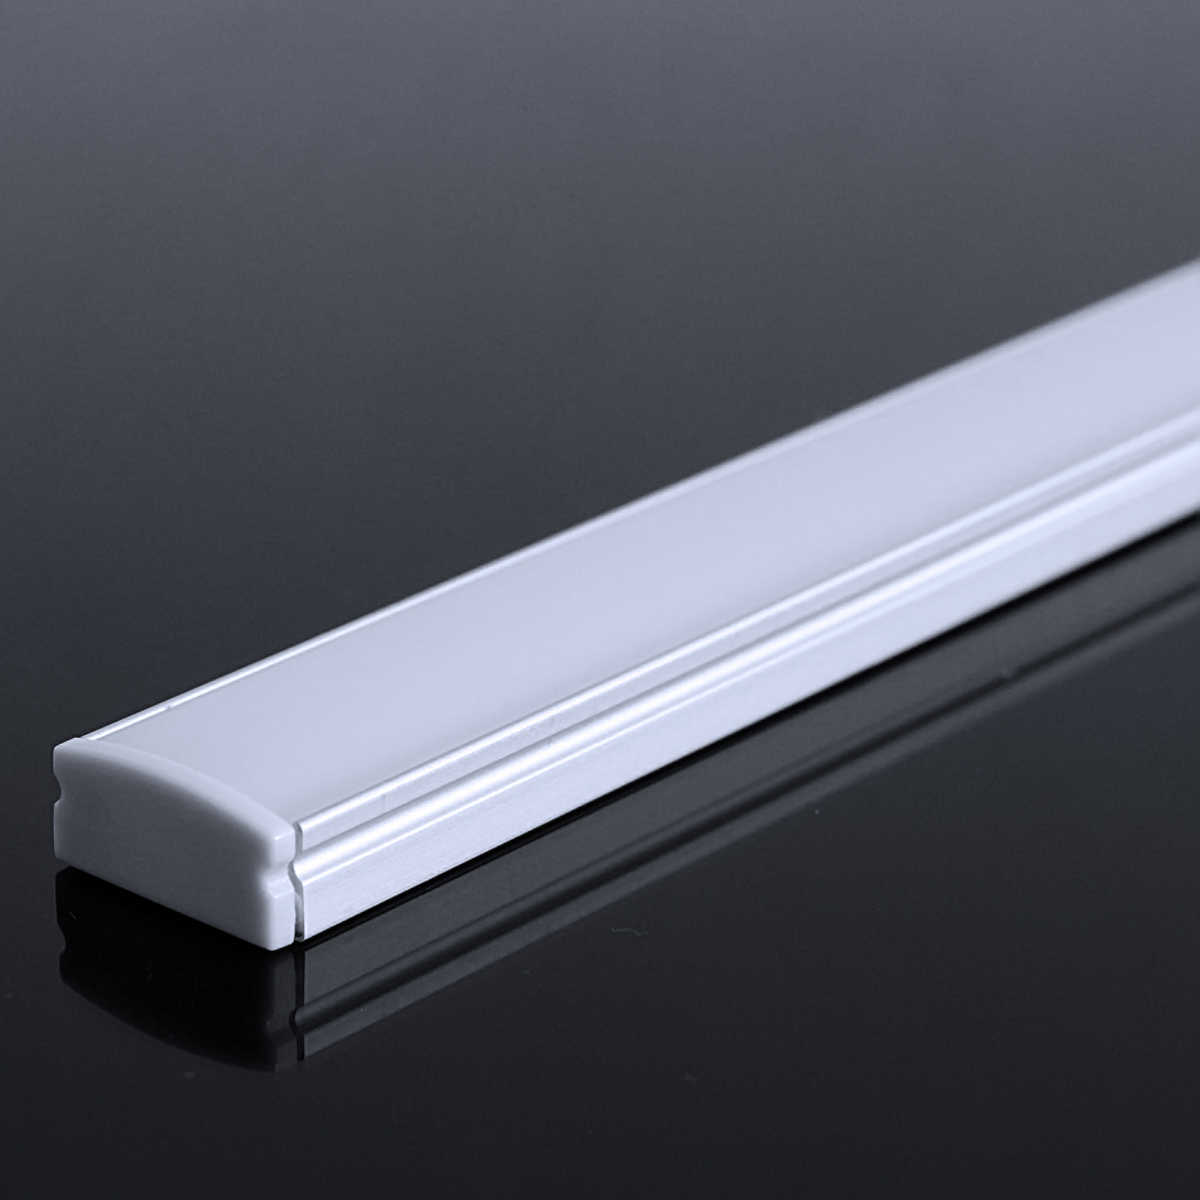 LED Flachprofil "Slim-Line" | Abdeckung diffus | Zuschnitt auf 41cm |